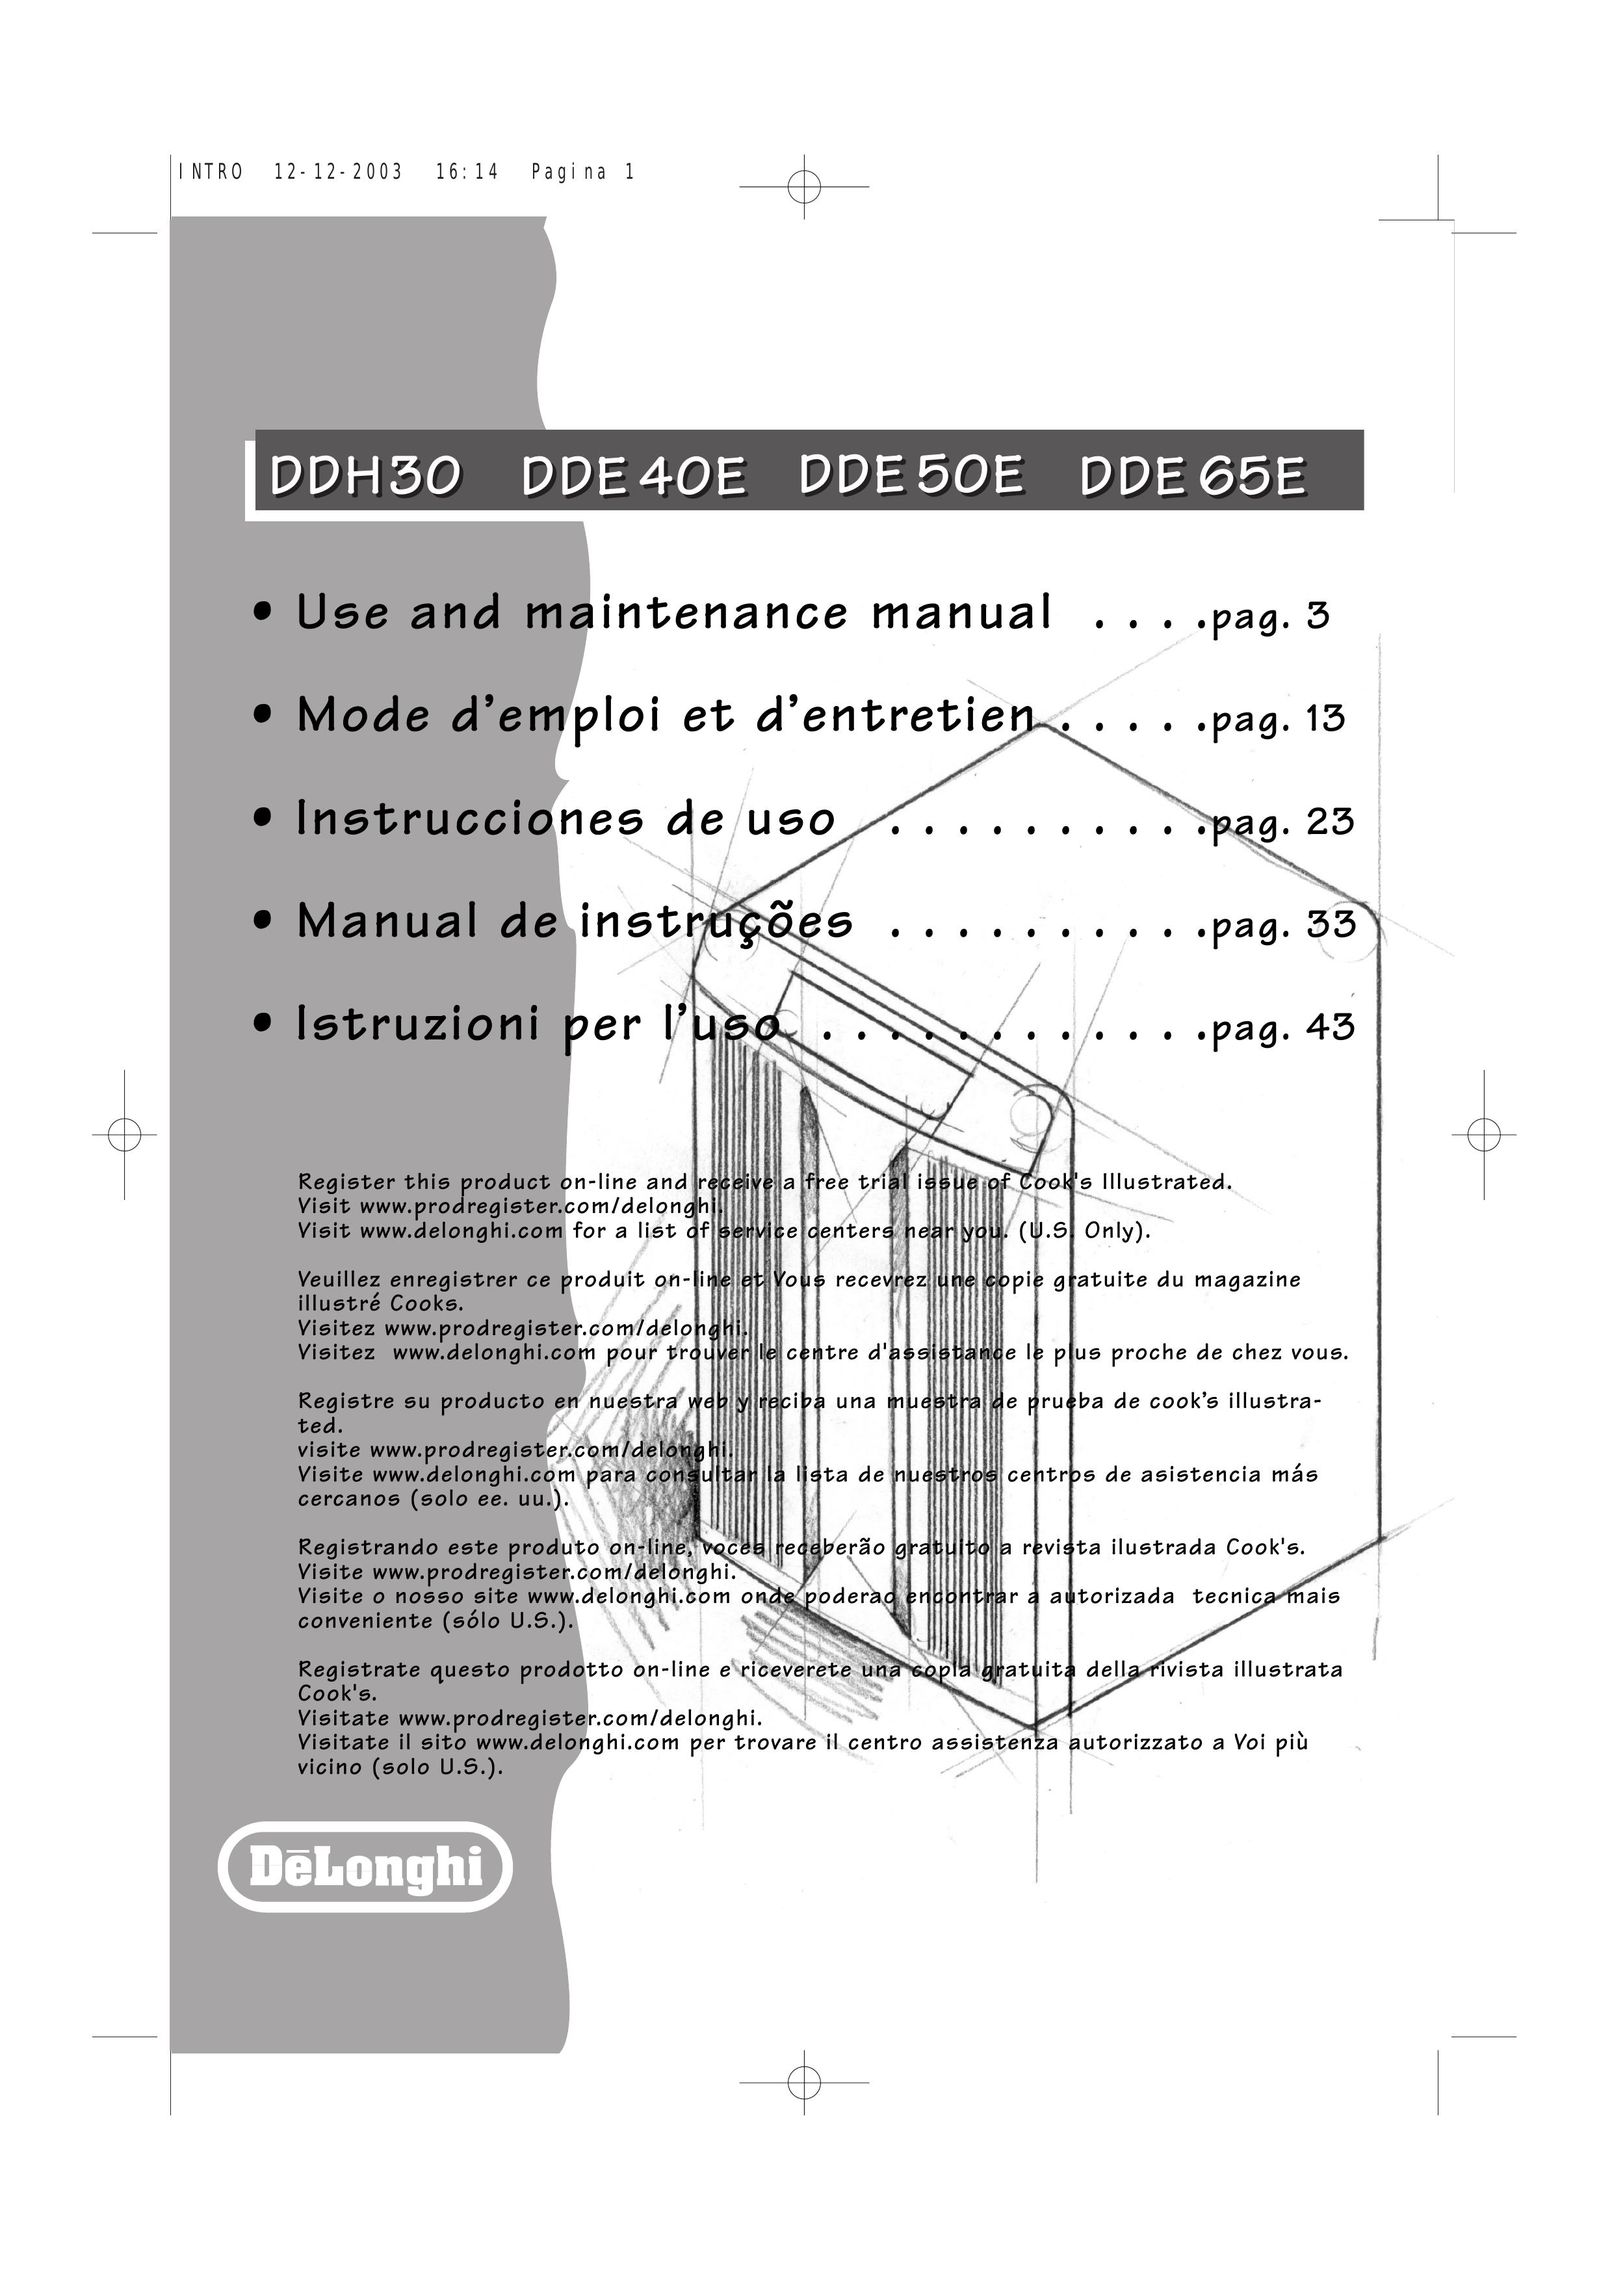 DeLonghi DDE 65EDDE 50E Air Cleaner User Manual